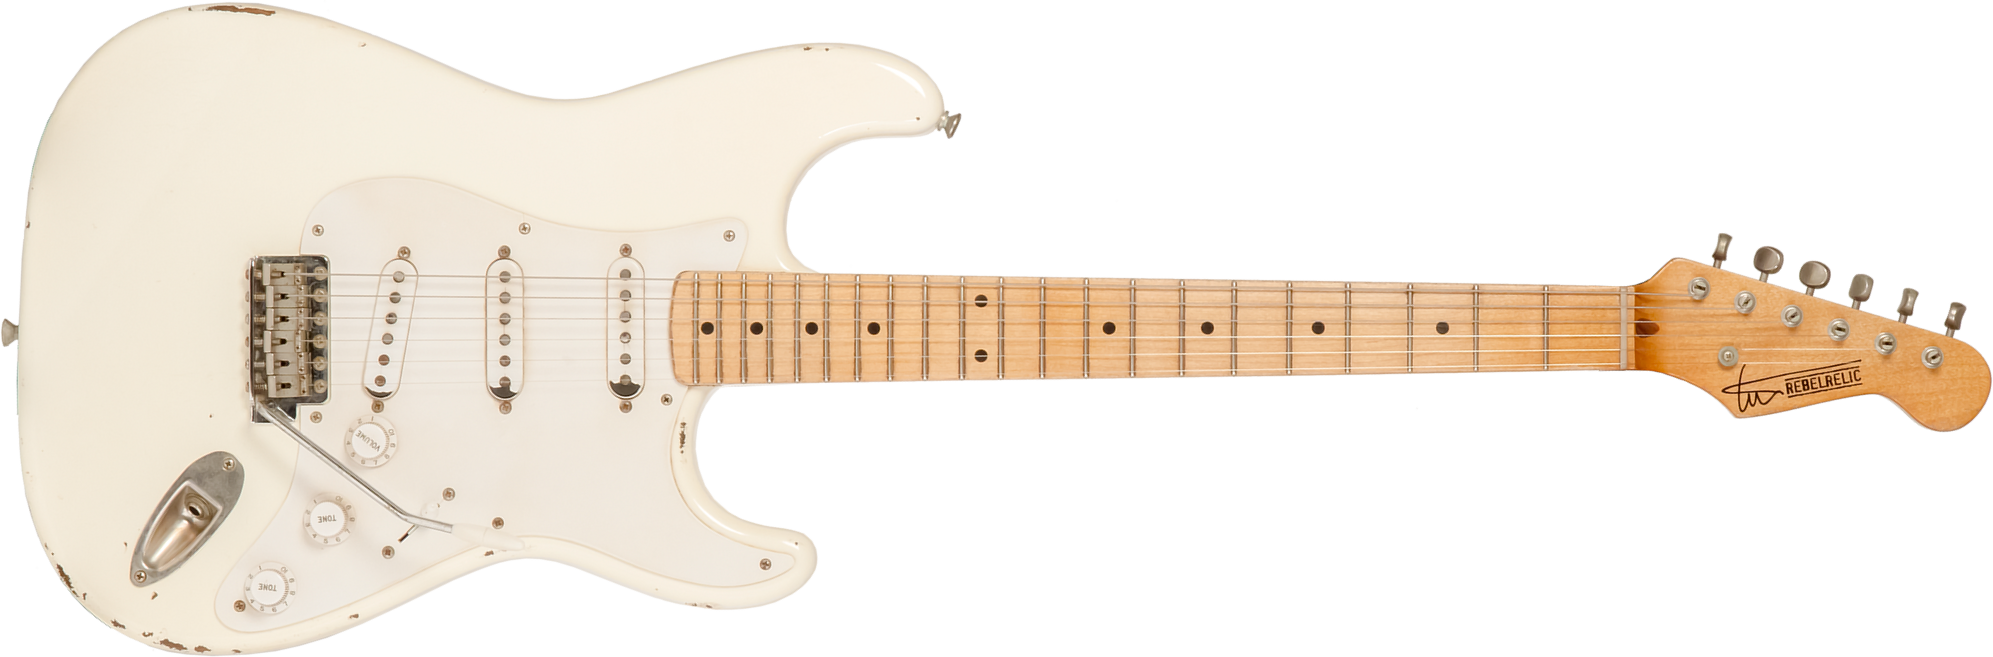 Rebelrelic S-series 1955 3s Trem Mn #231006 - Olympic White - Elektrische gitaar in Str-vorm - Main picture